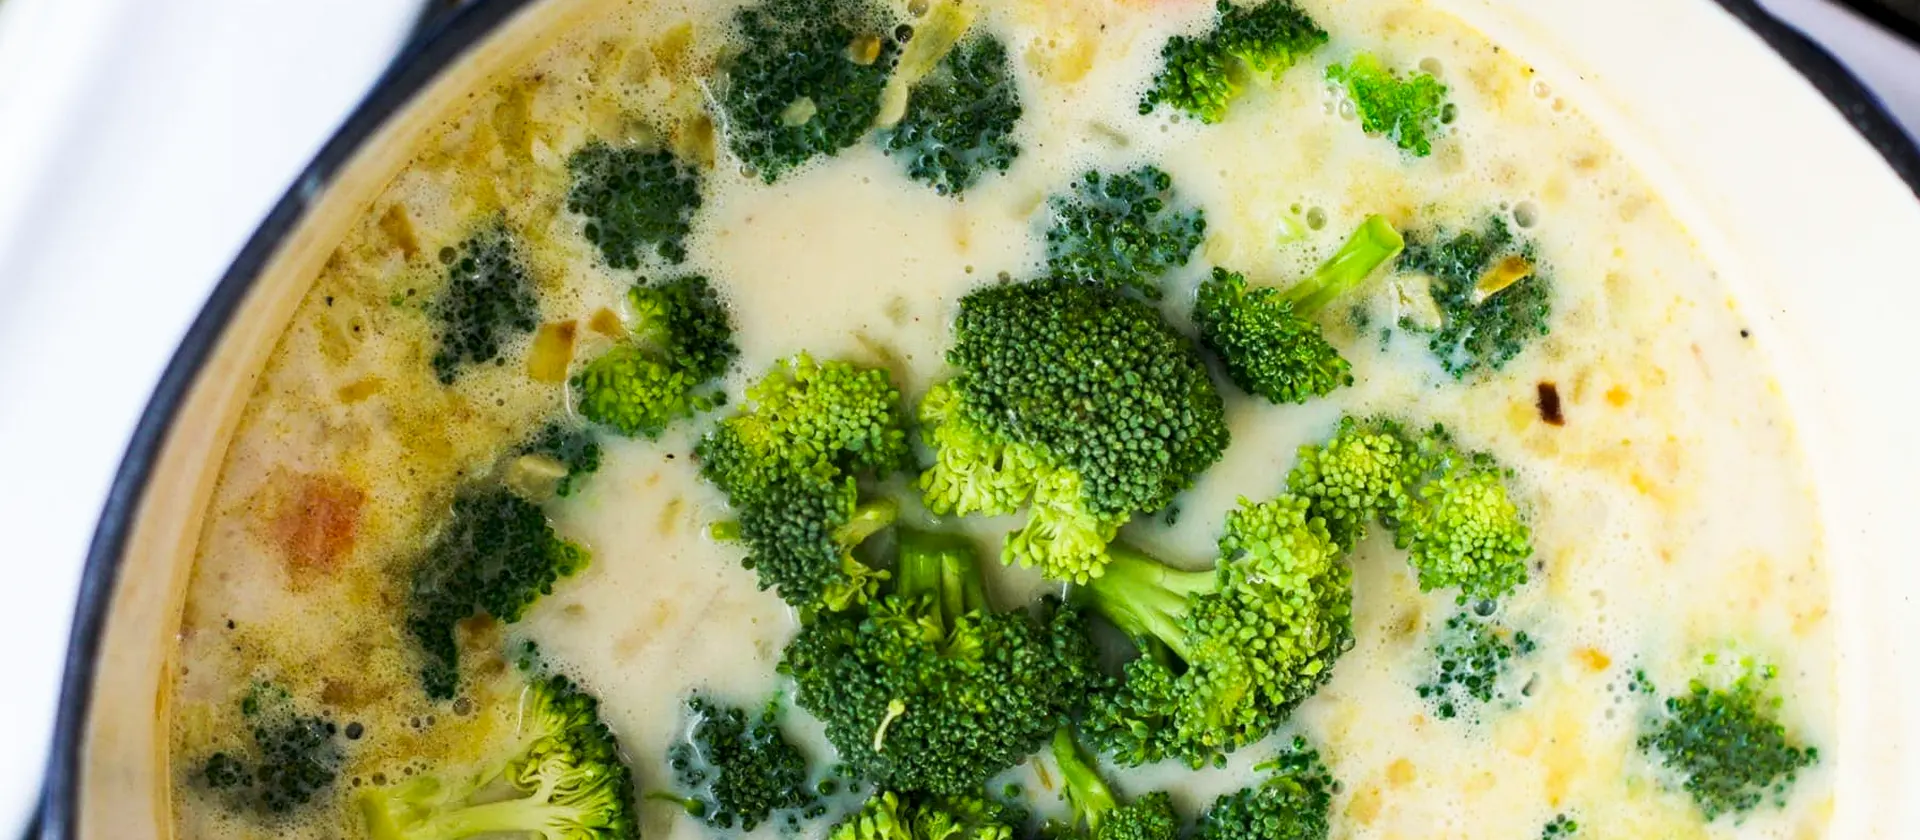 Semana Santa: Sopa de brócoli y queso panela ¡fácil y económica para consentir a los tuyos!
!